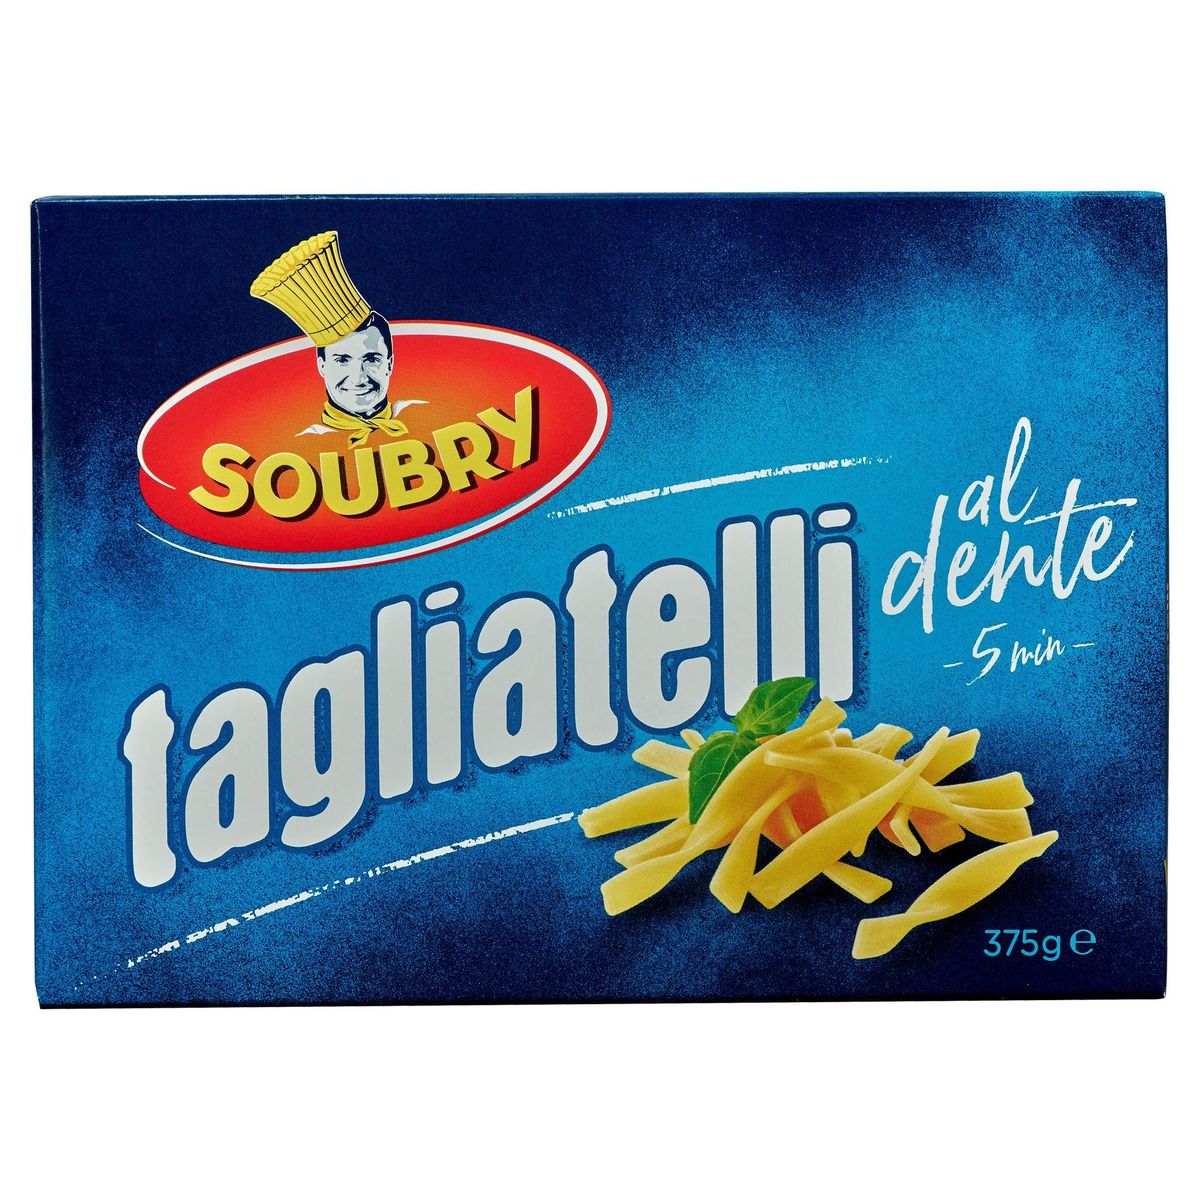 Soubry Pâtes Tagliatelli 375g